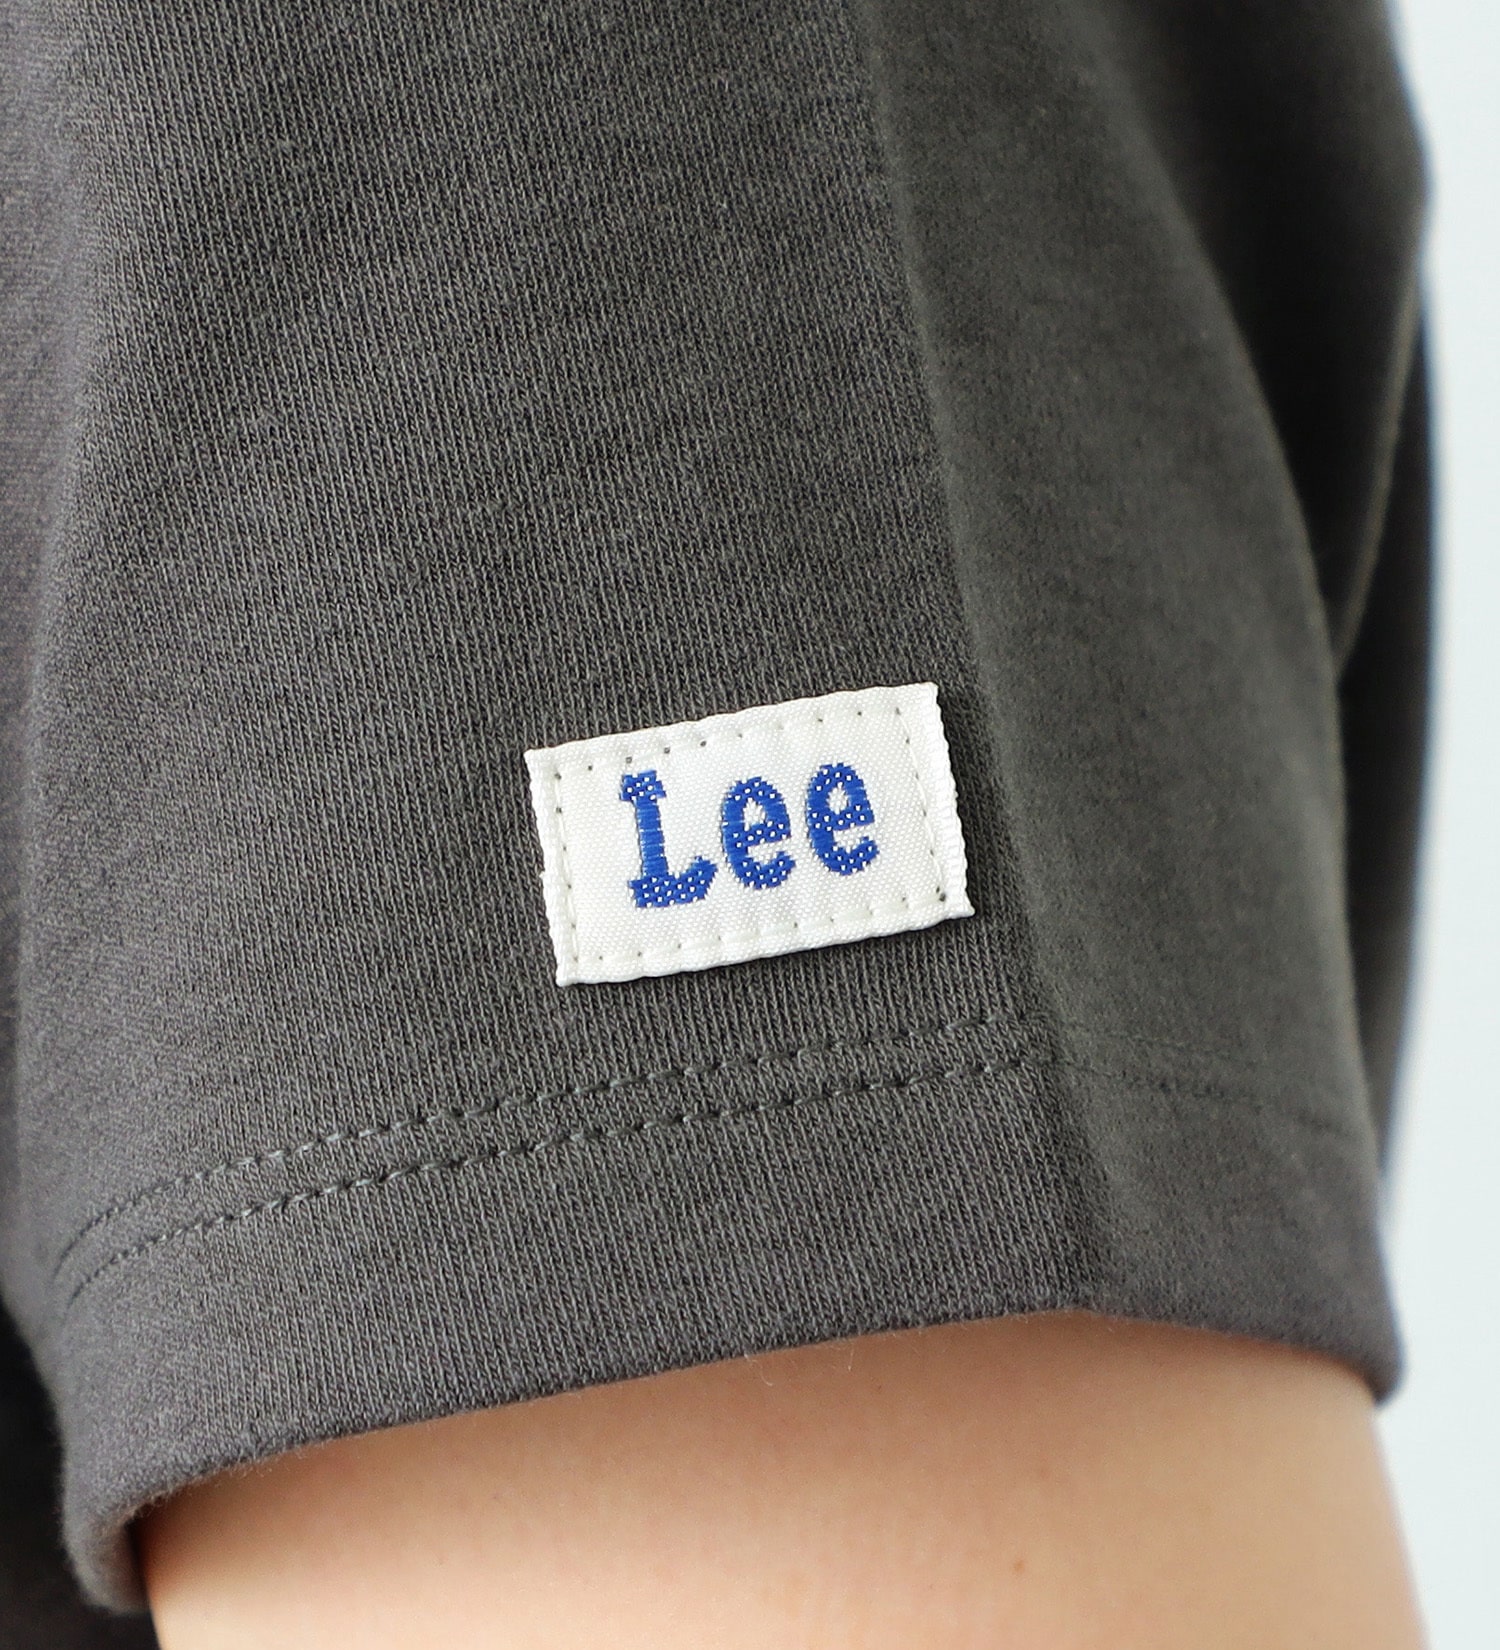 Lee(リー)の【FINAL SALE】コンパクトフィット ショートスリーブTee|トップス/Tシャツ/カットソー/レディース|チャコールグレー